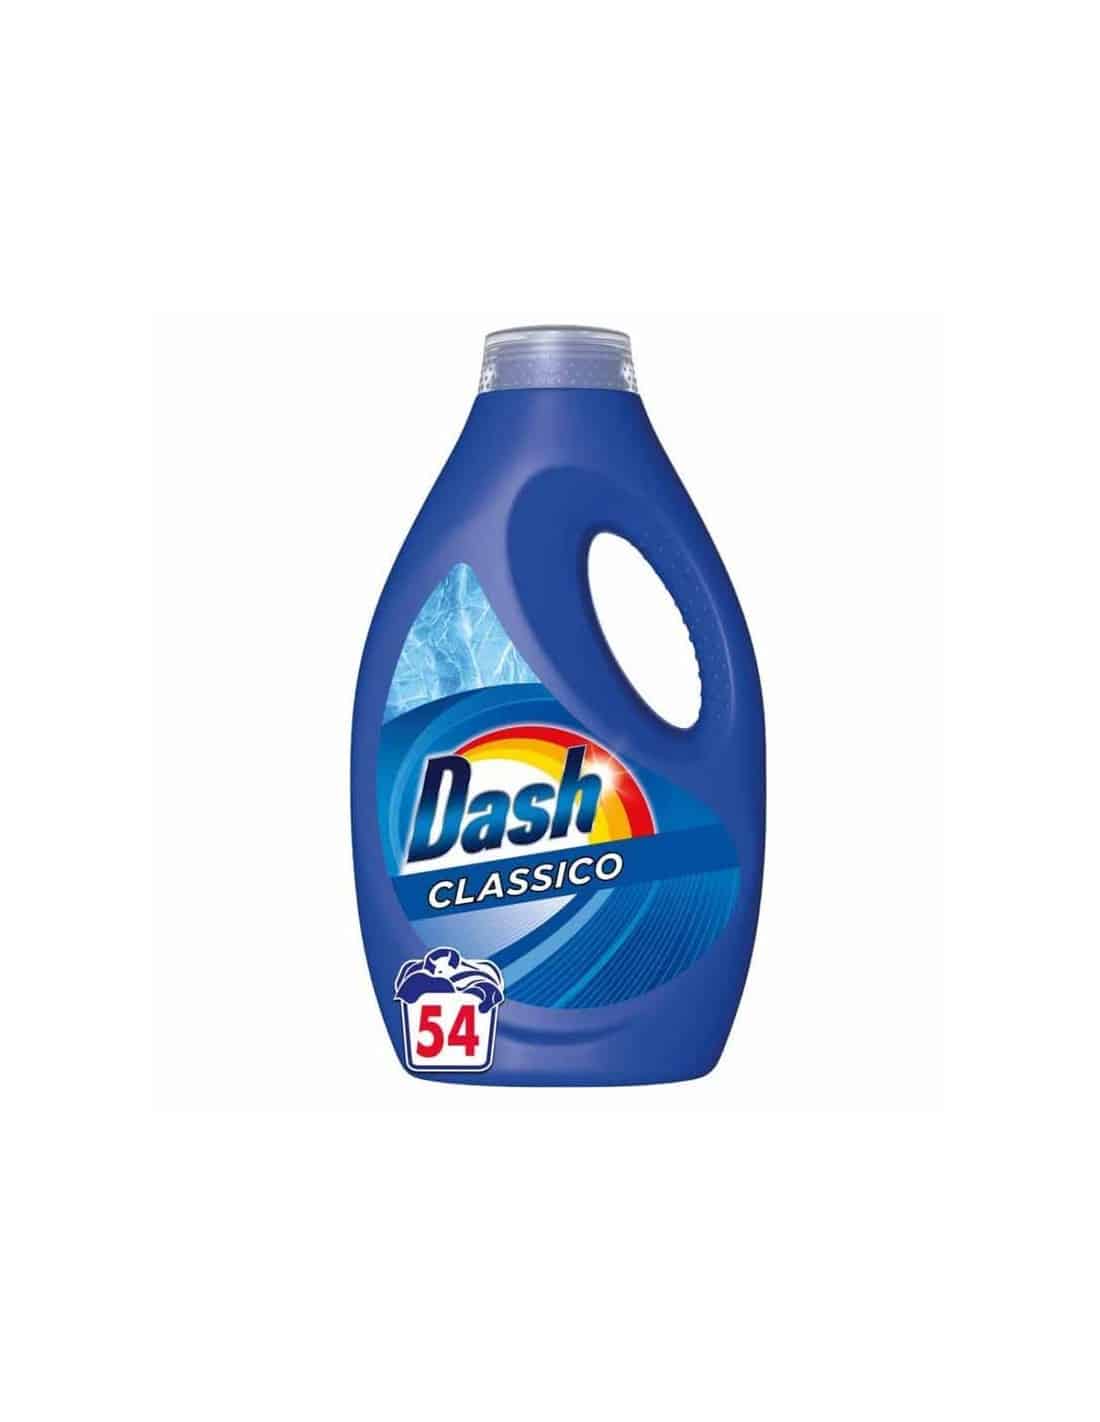 Dash lavatrice liquido 54 misurini Classico 2970 ml - Piazza Mercato Casa